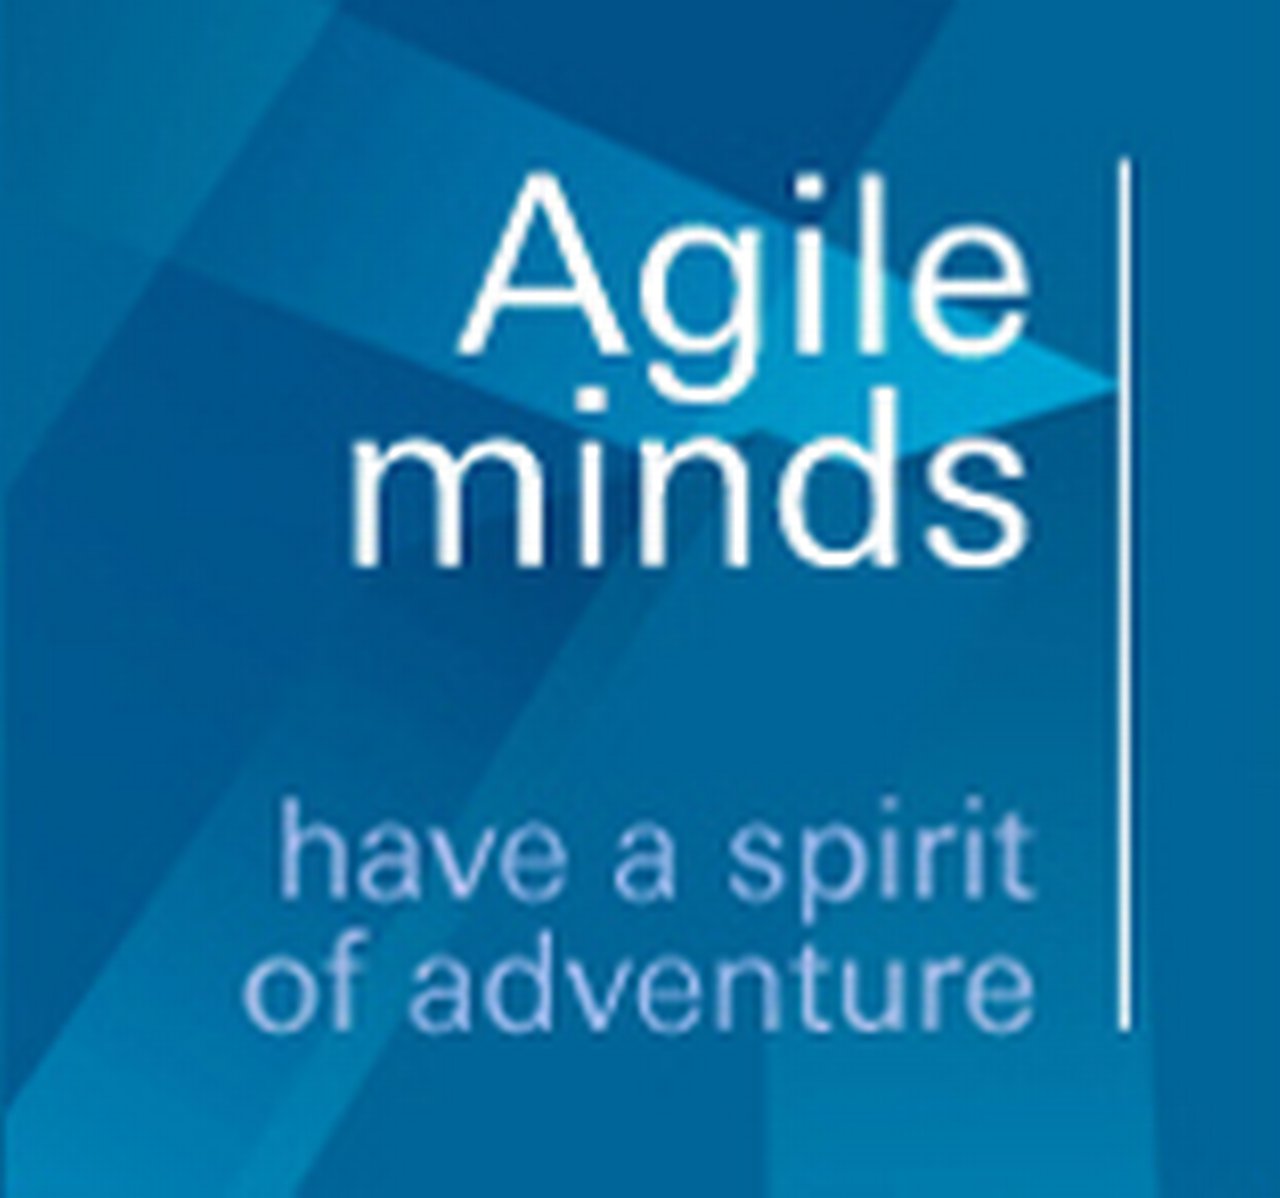 Agile_minds_werken-bij_db_banner.jpg